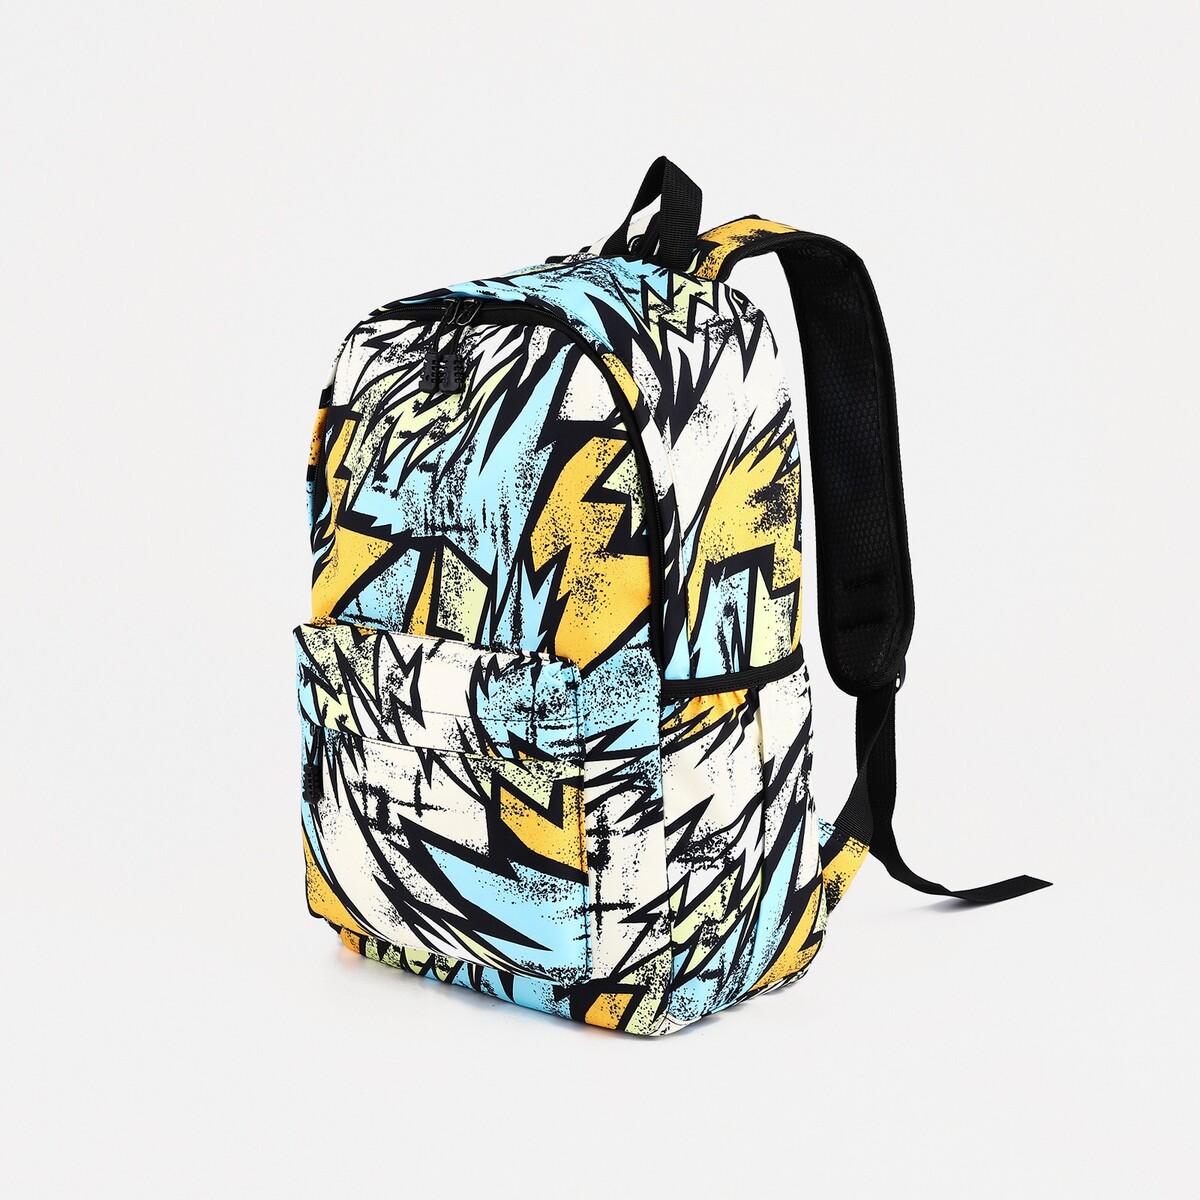 Рюкзак школьный из текстиля на молнии, 3 кармана, цвет желтый/разноцветный рюкзак школьный из текстиля 3 кармана белый голубой